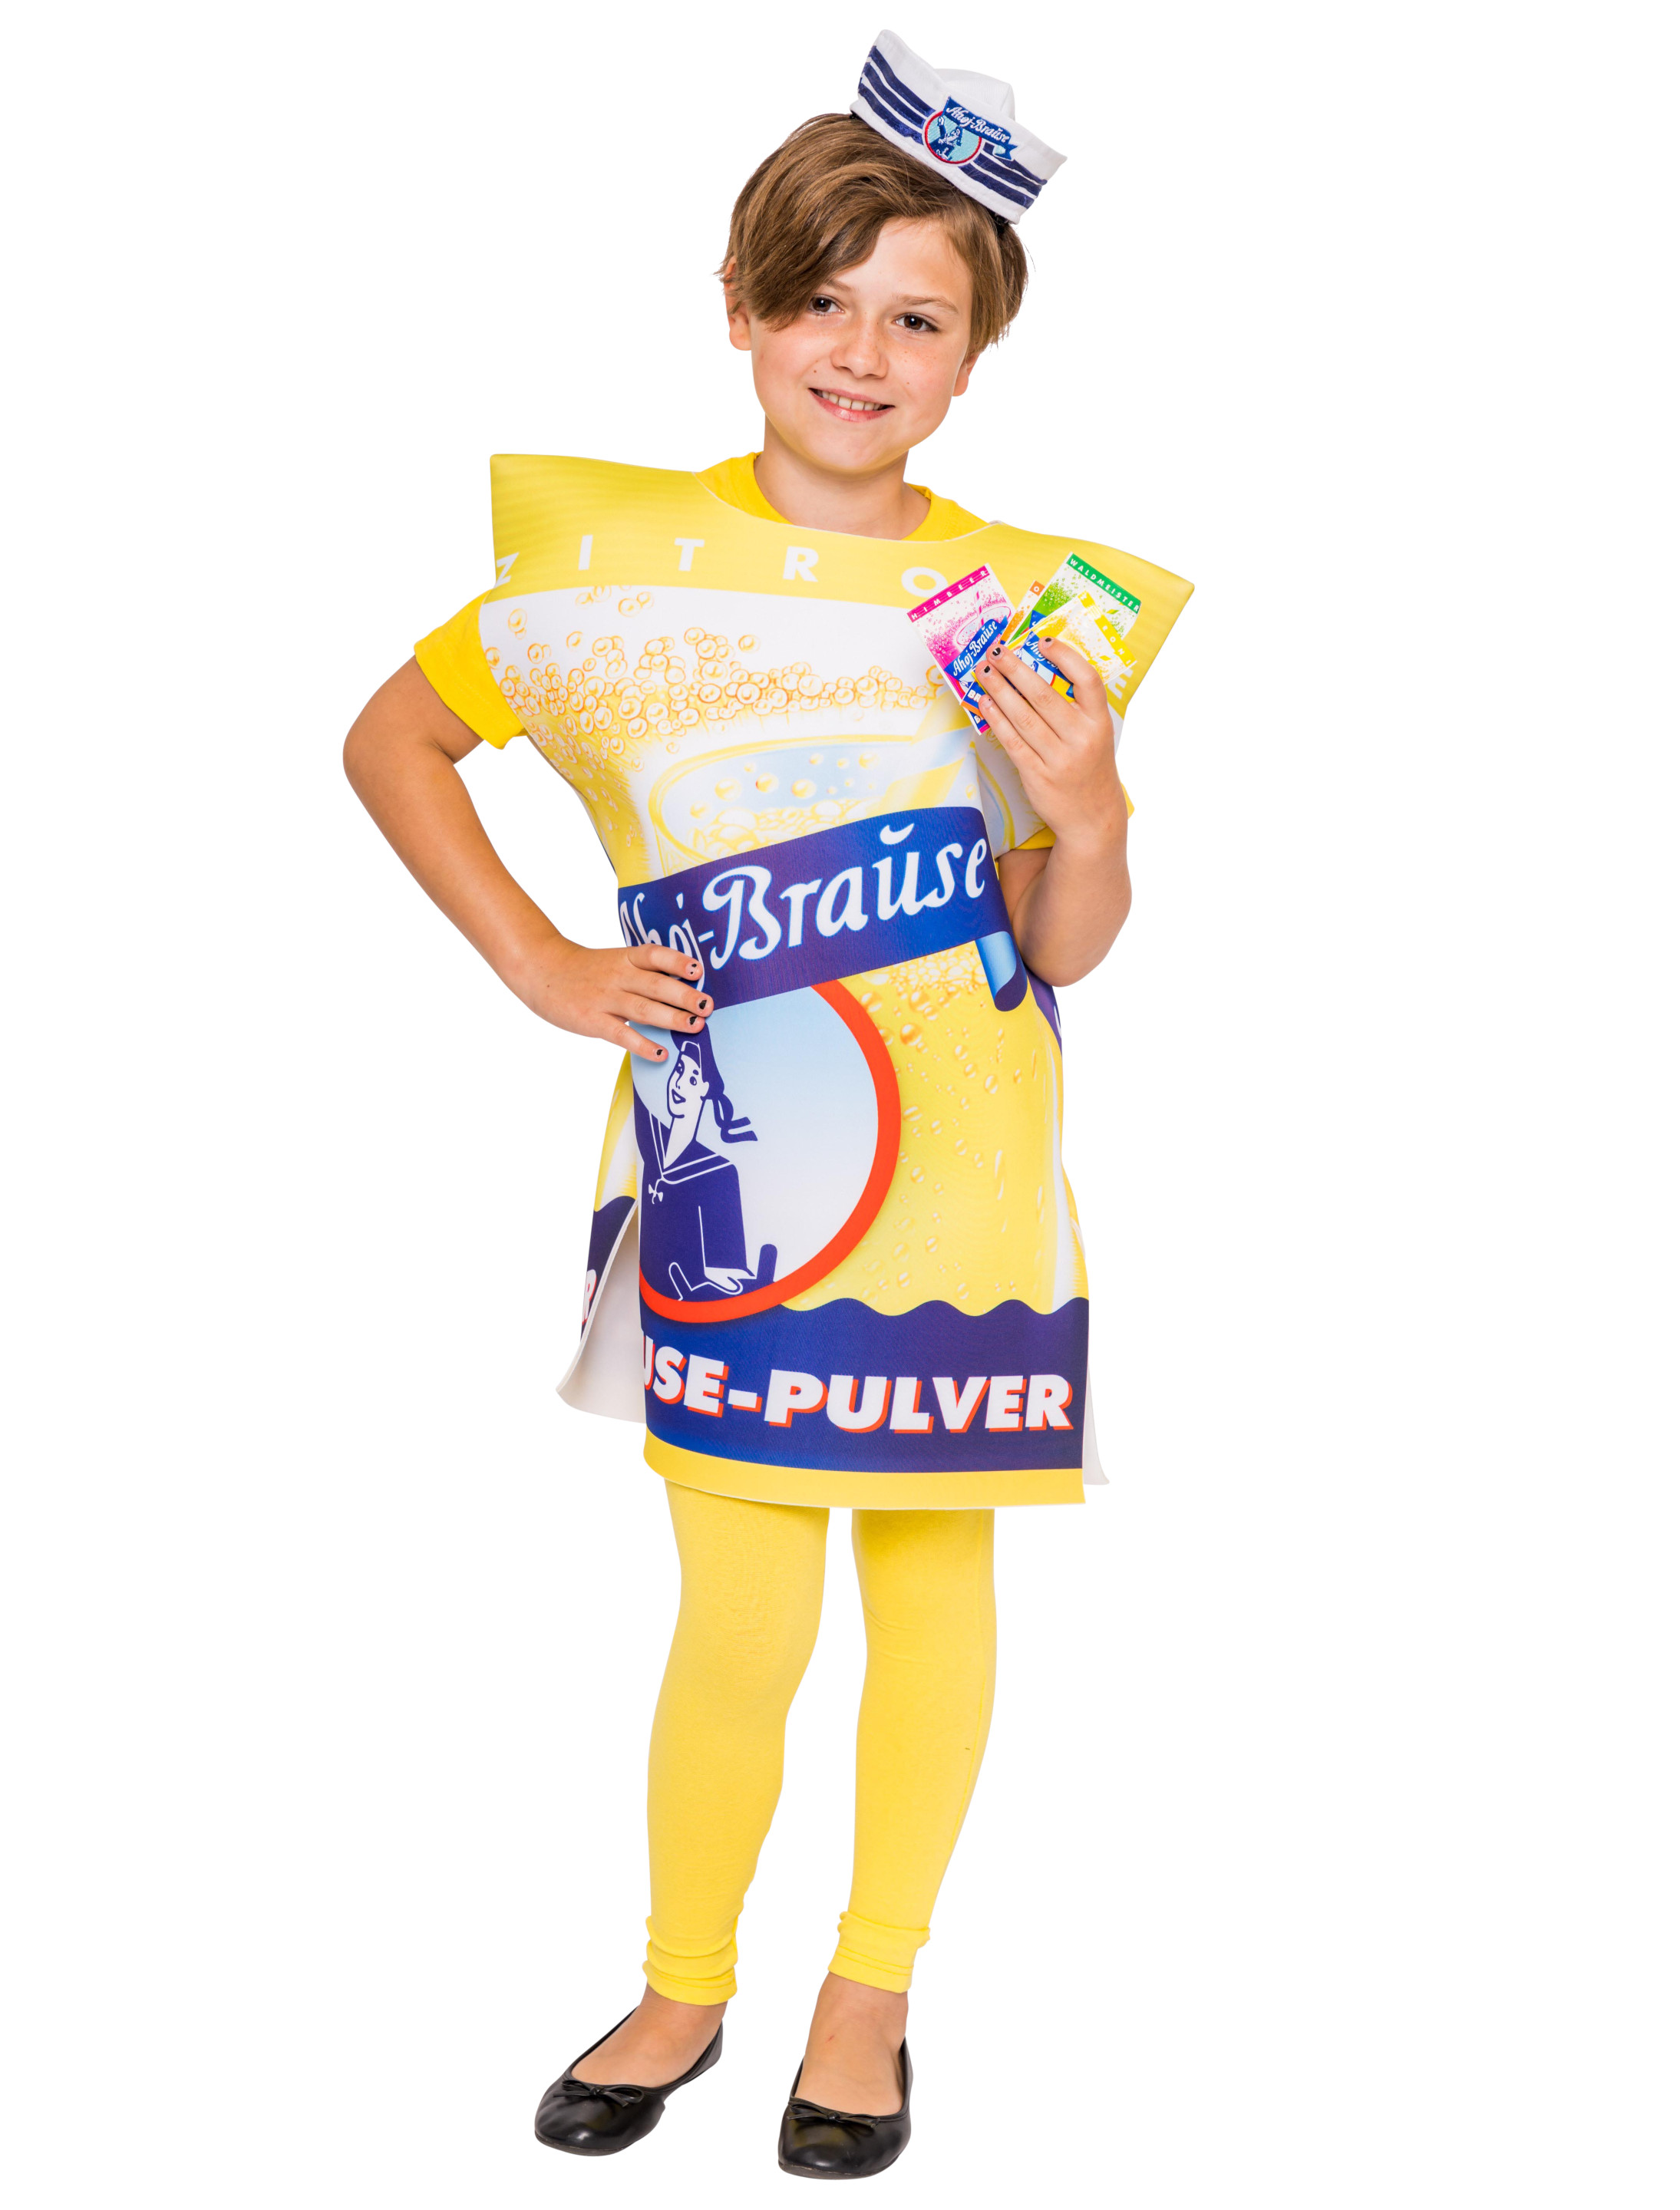 Kostüm Ahoj-Brause Kinder Unisex gelb one size